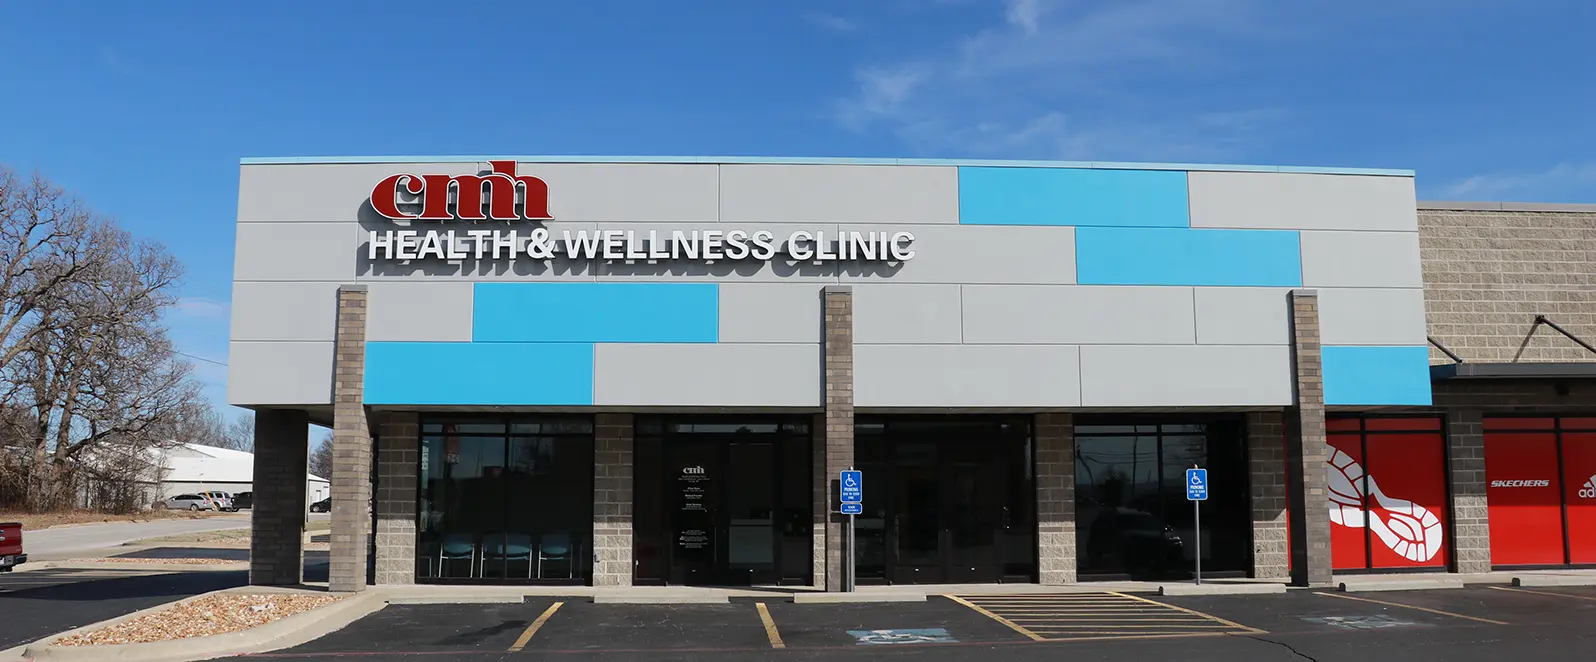 CMH Health & Wellness Clinic exterior